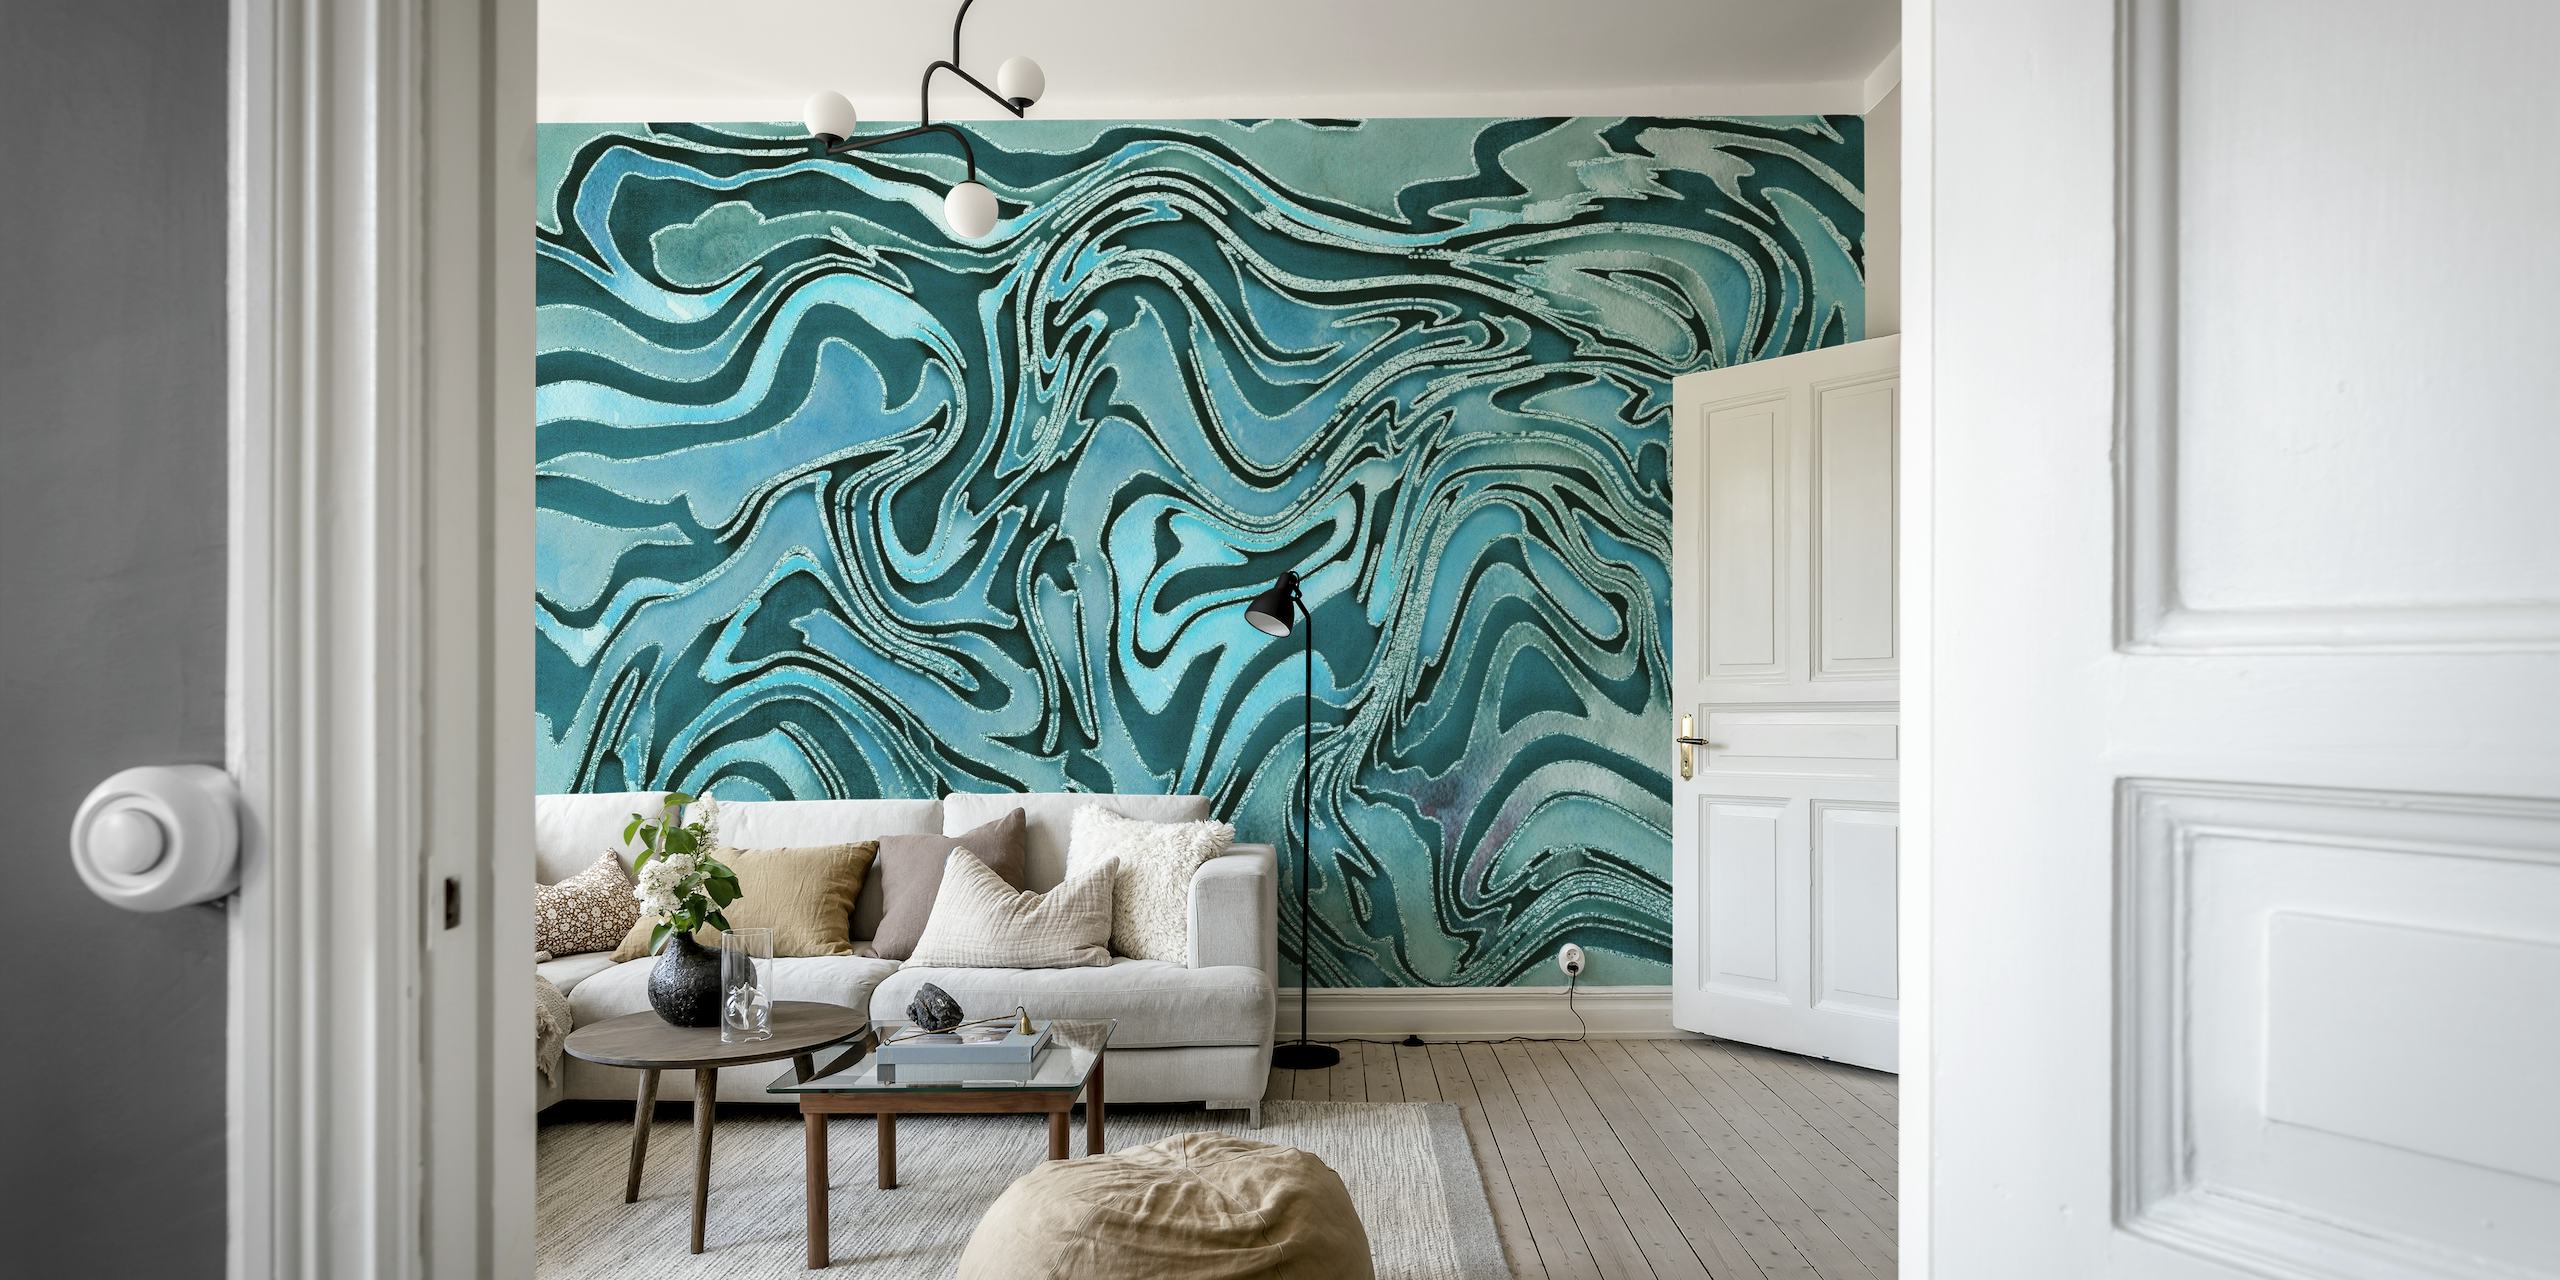 Mural de parede de mármore abstrato Teal líquido com padrões giratórios de azul-petróleo e turquesa que lembram mármore natural